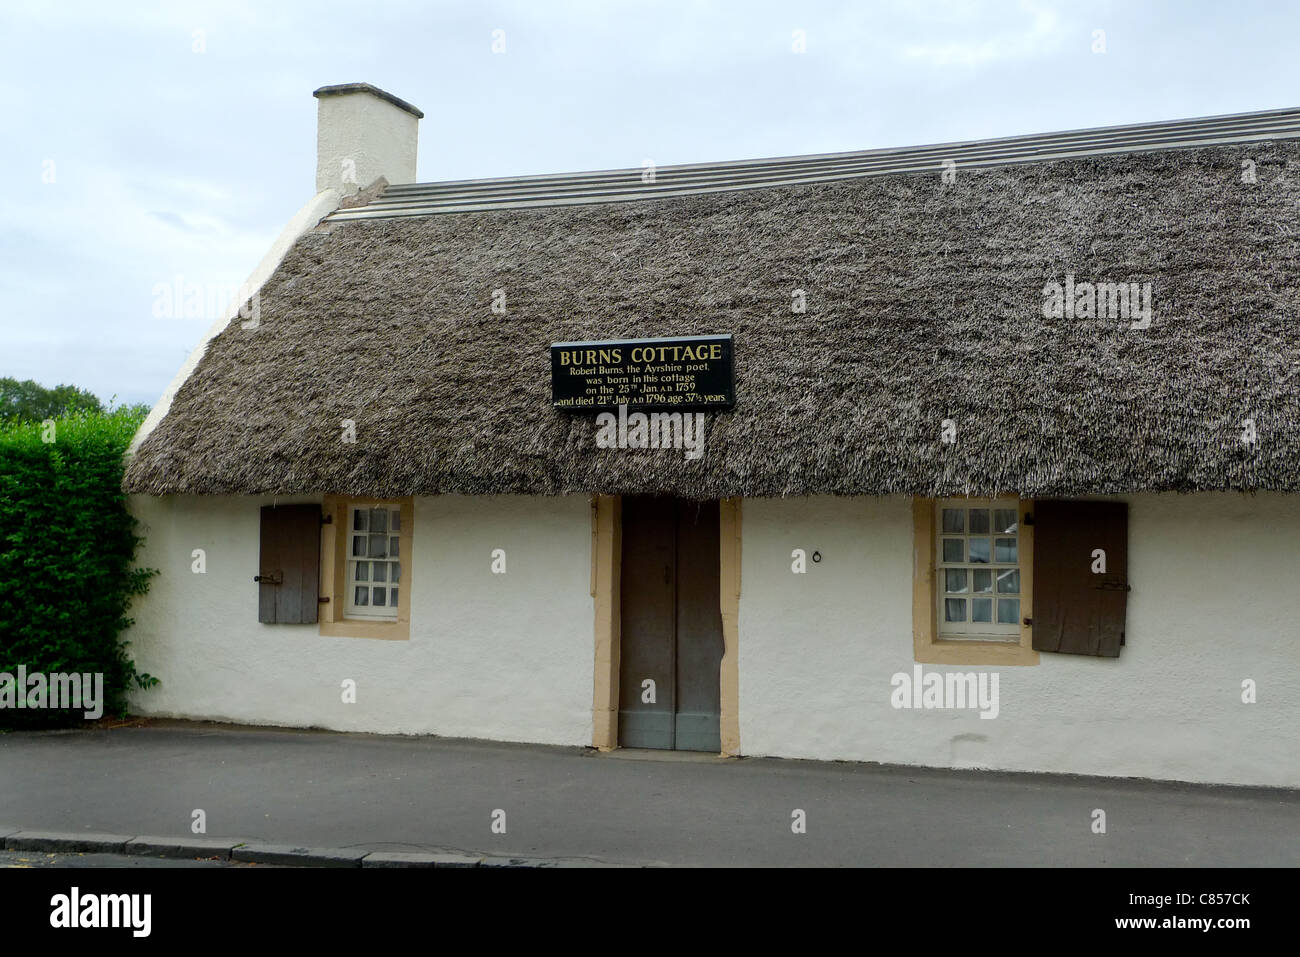 Ferienhaus-Geburtsort des schottischen Nationaldichters Robert Burns, Alloway, Schottland, 2011. Stockfoto